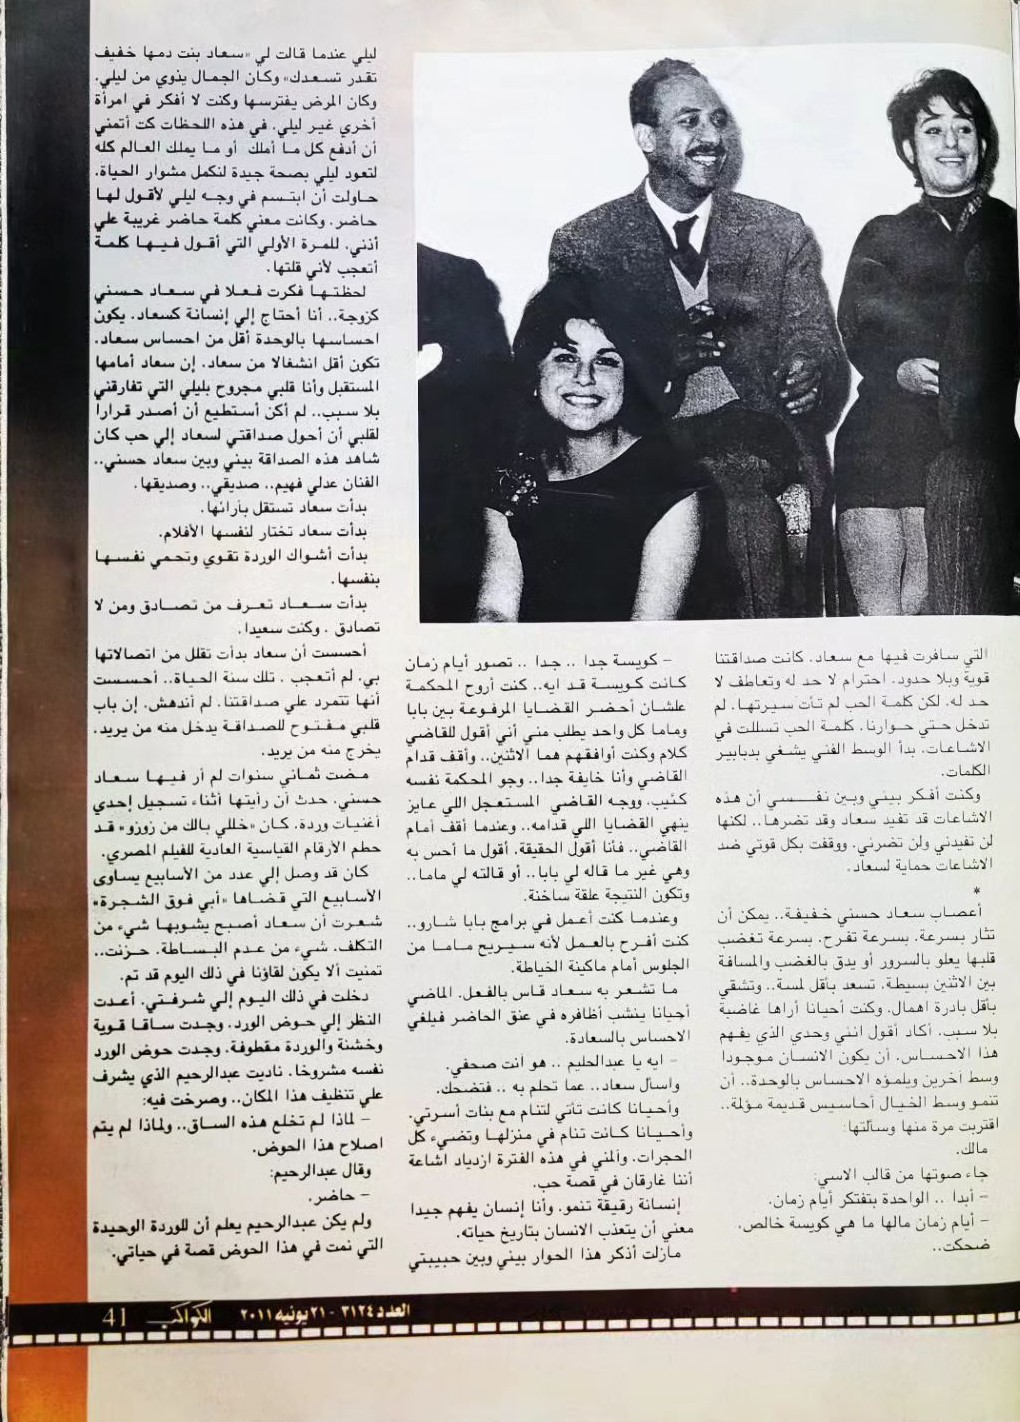 حسني - مقال صحفي : حليم .. نعم أحببت سعاد حسني ولكن ..!! 2011 م 415